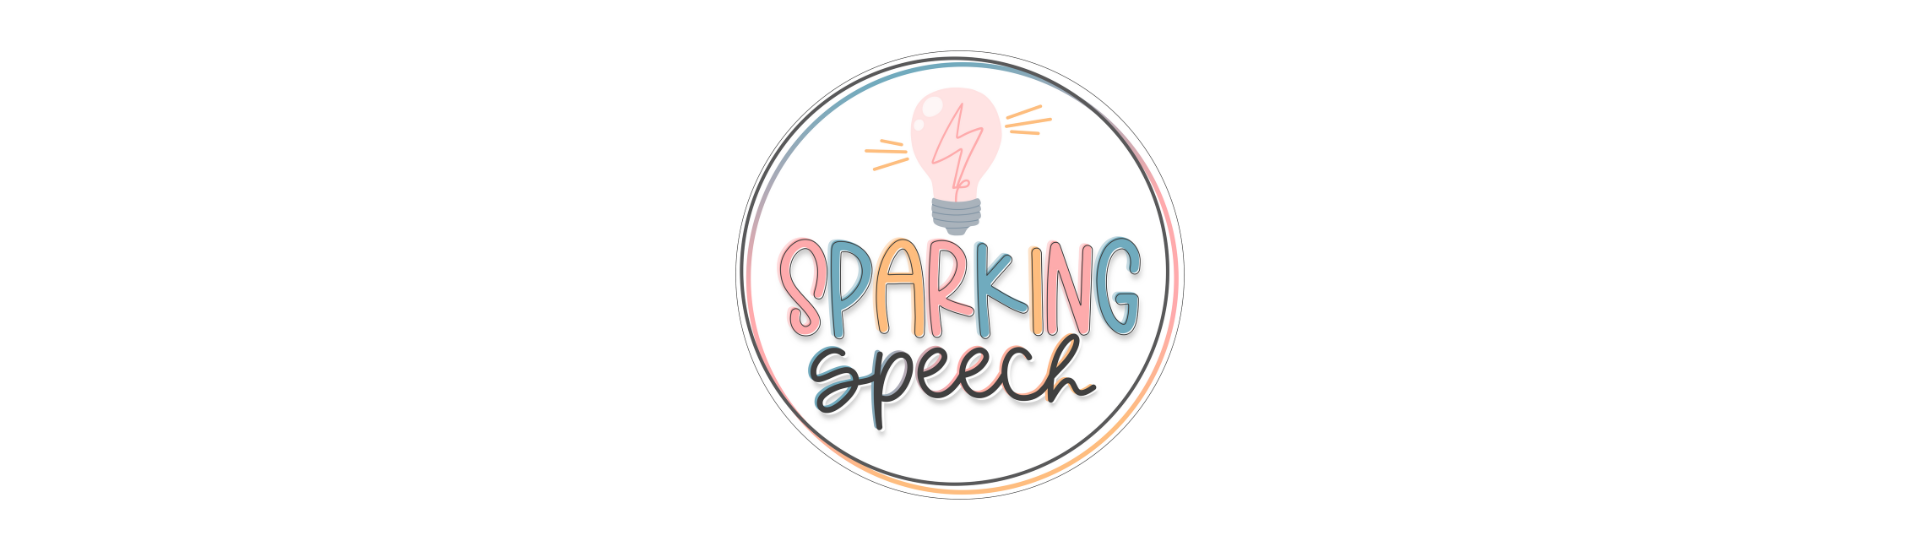 Sparking speech